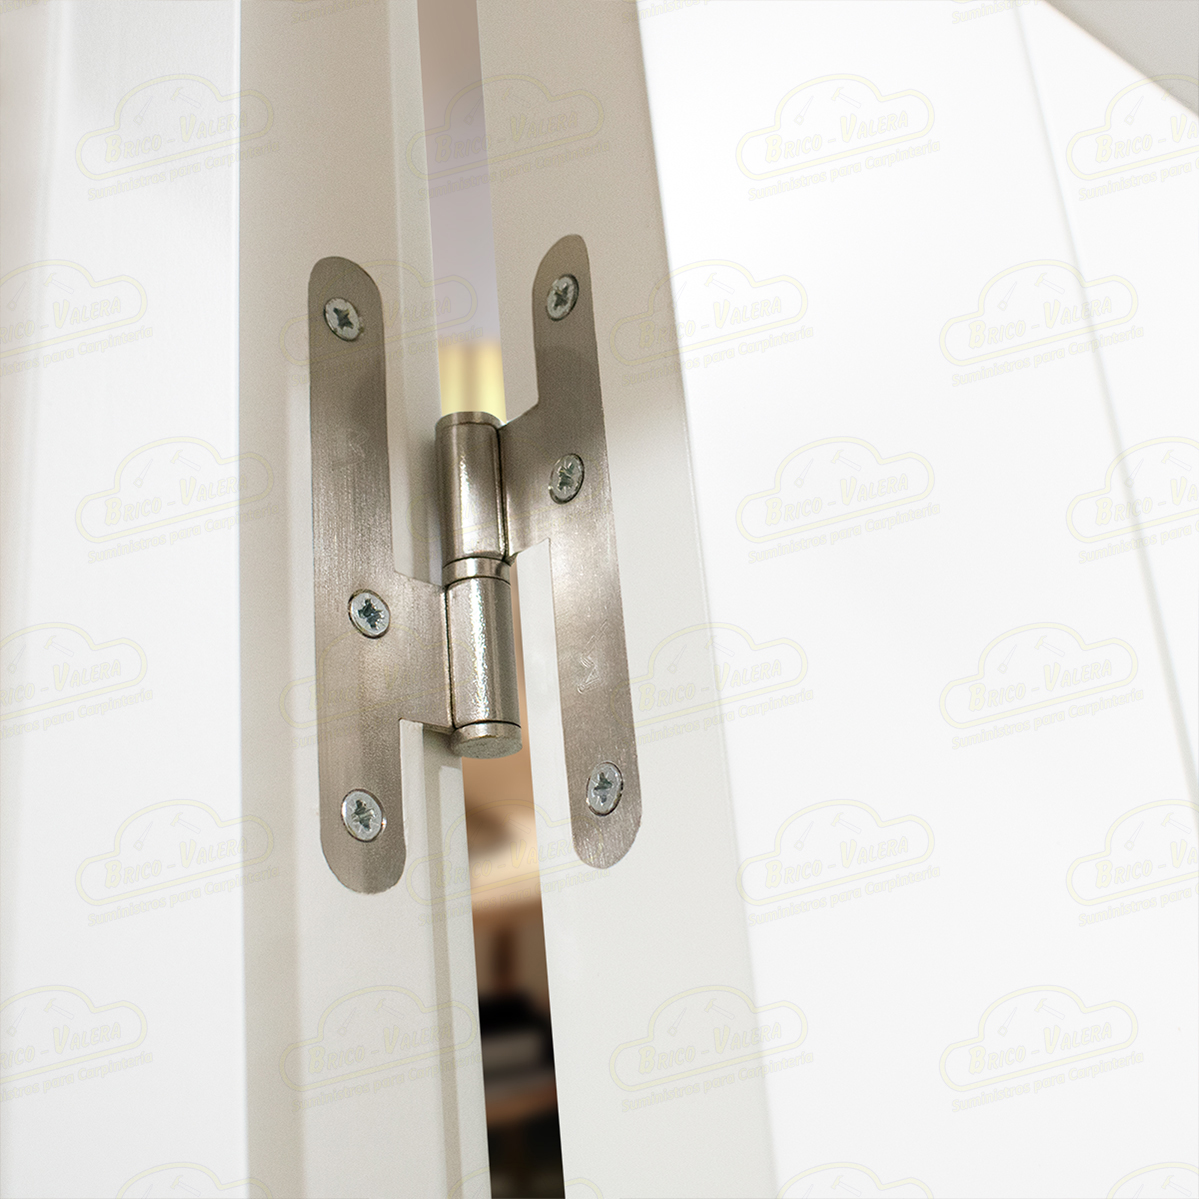 Puerta Doble de Salón más fijo PVT10-V2 Lacada Blanca de Interior en Block (Maciza)